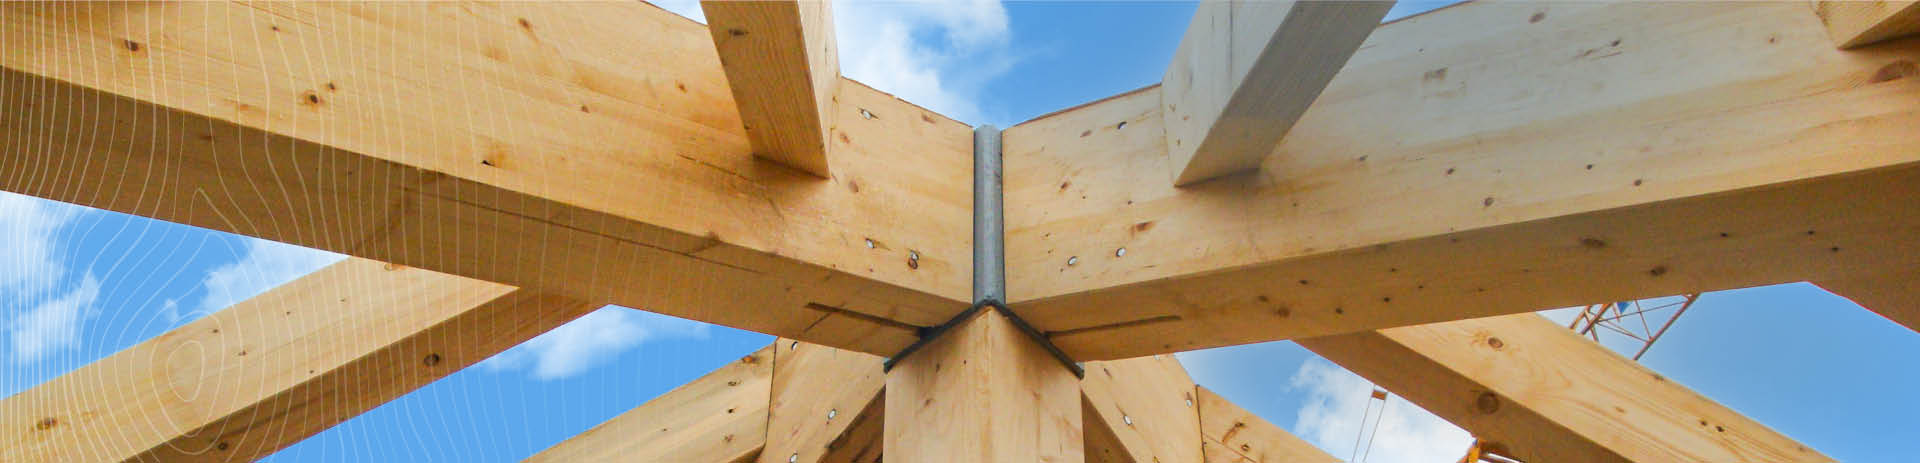 Impressum zu Schmickler Holzbau hochwertige Holzkonstruktionen